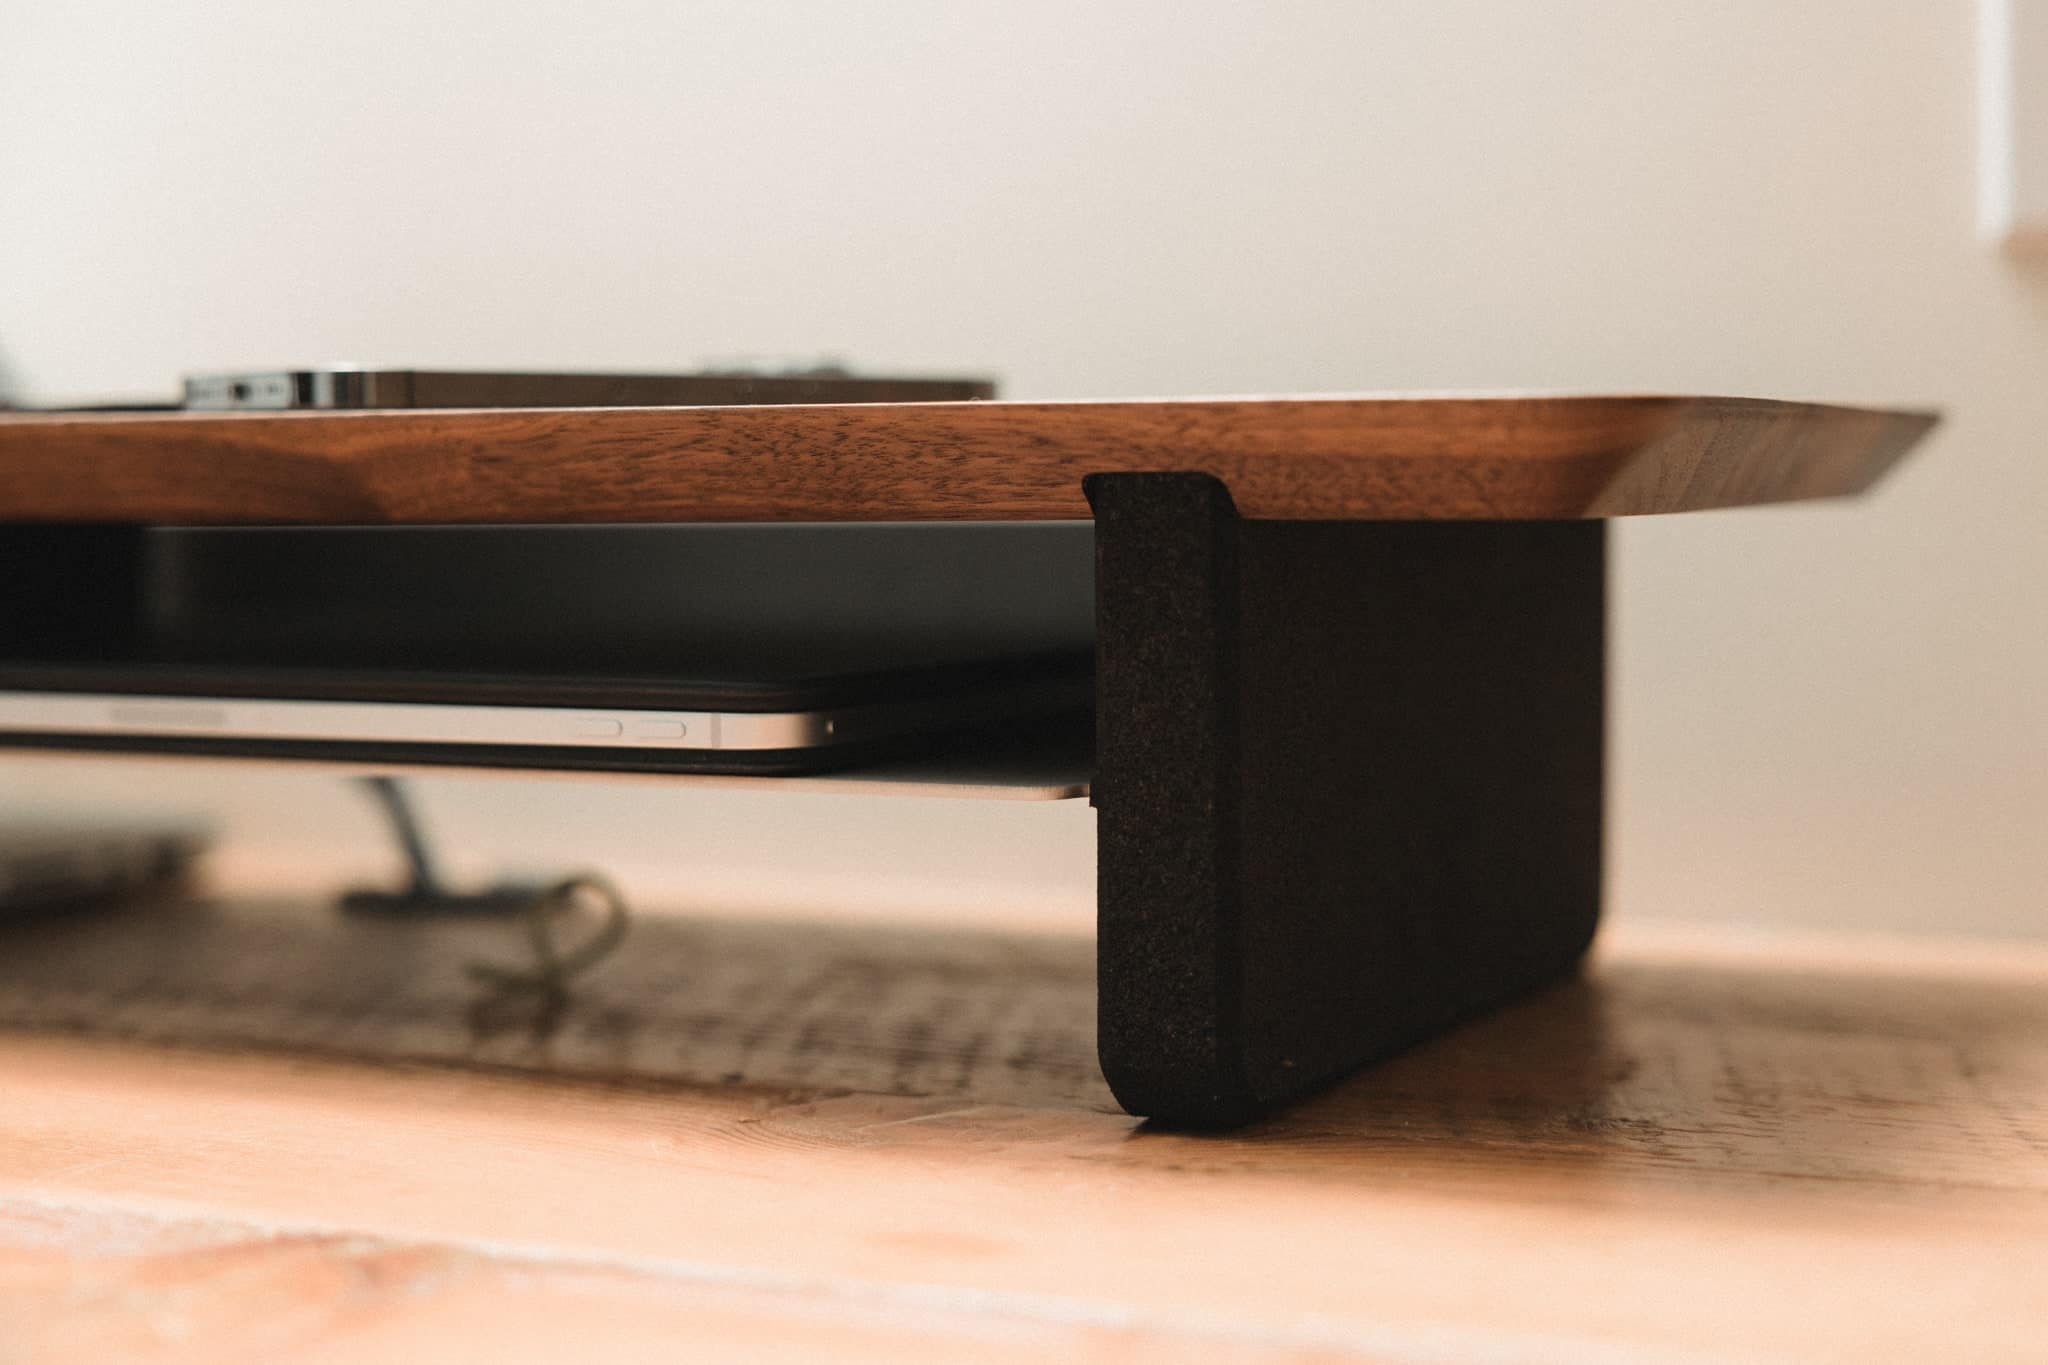 Grovemade Desk Shelf Review: Elevate your desk w/ a shelf and Qi pad